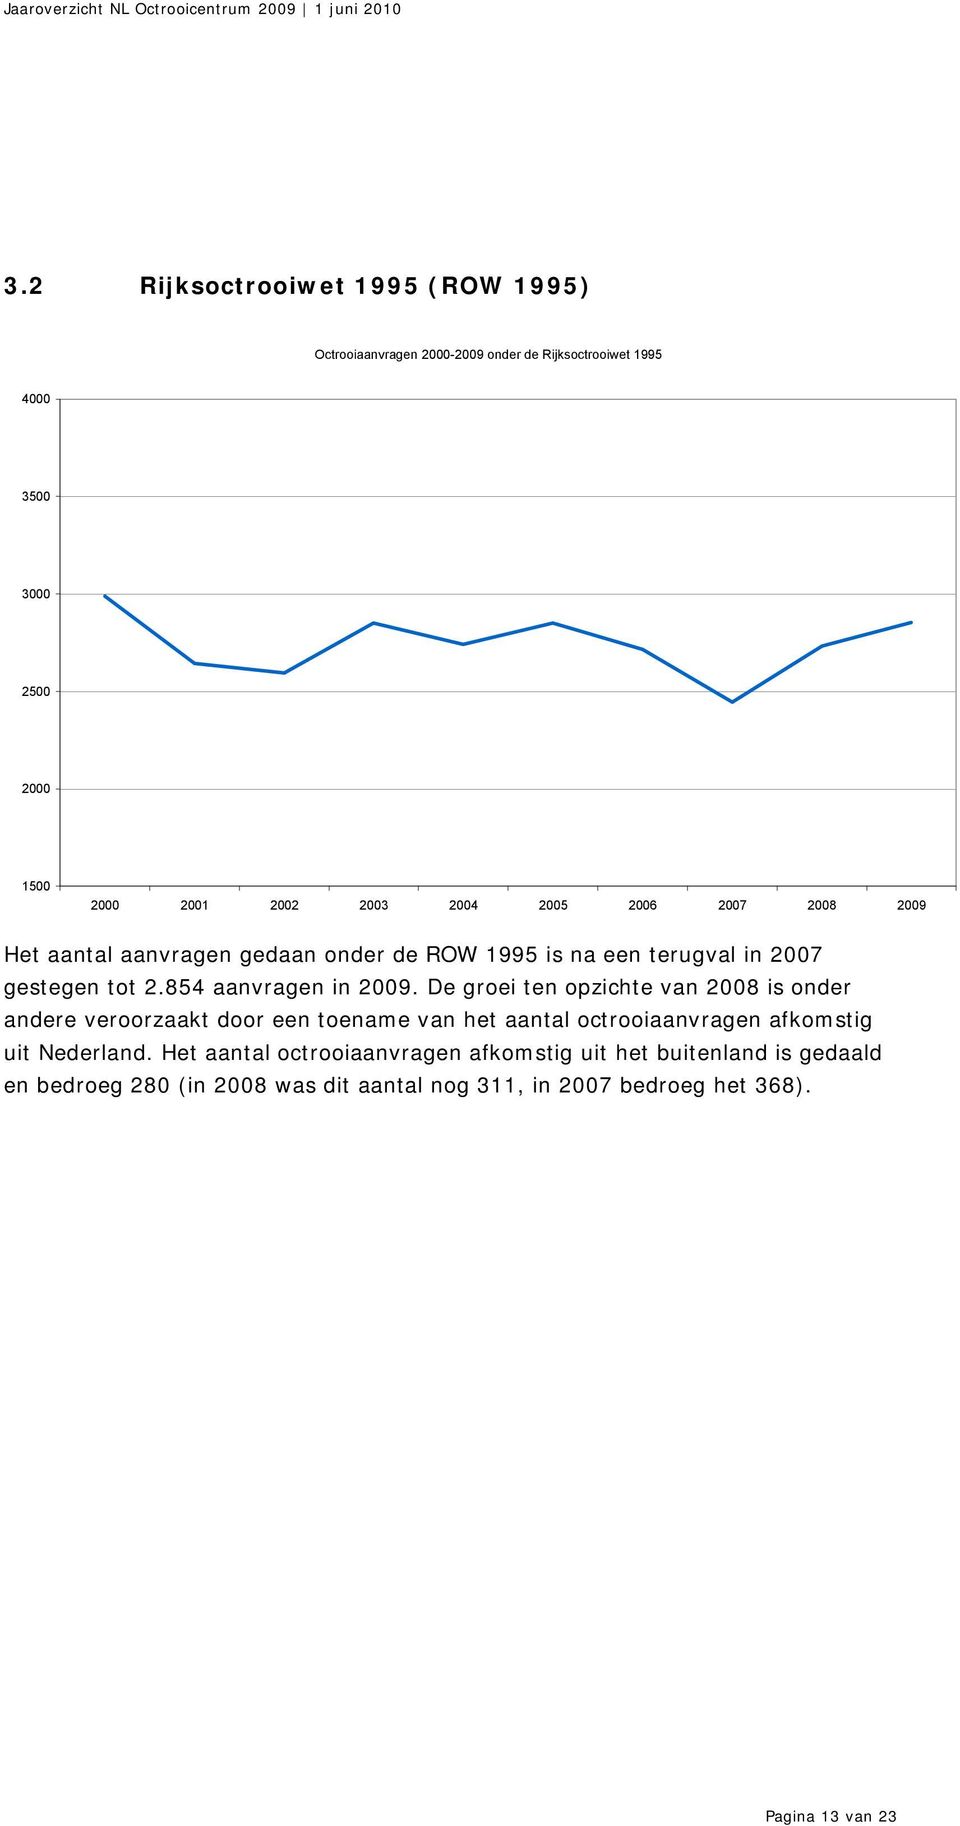 De groei ten opzichte van 2008 is onder andere veroorzaakt door een toename van het aantal octrooiaanvragen afkomstig uit Nederland.